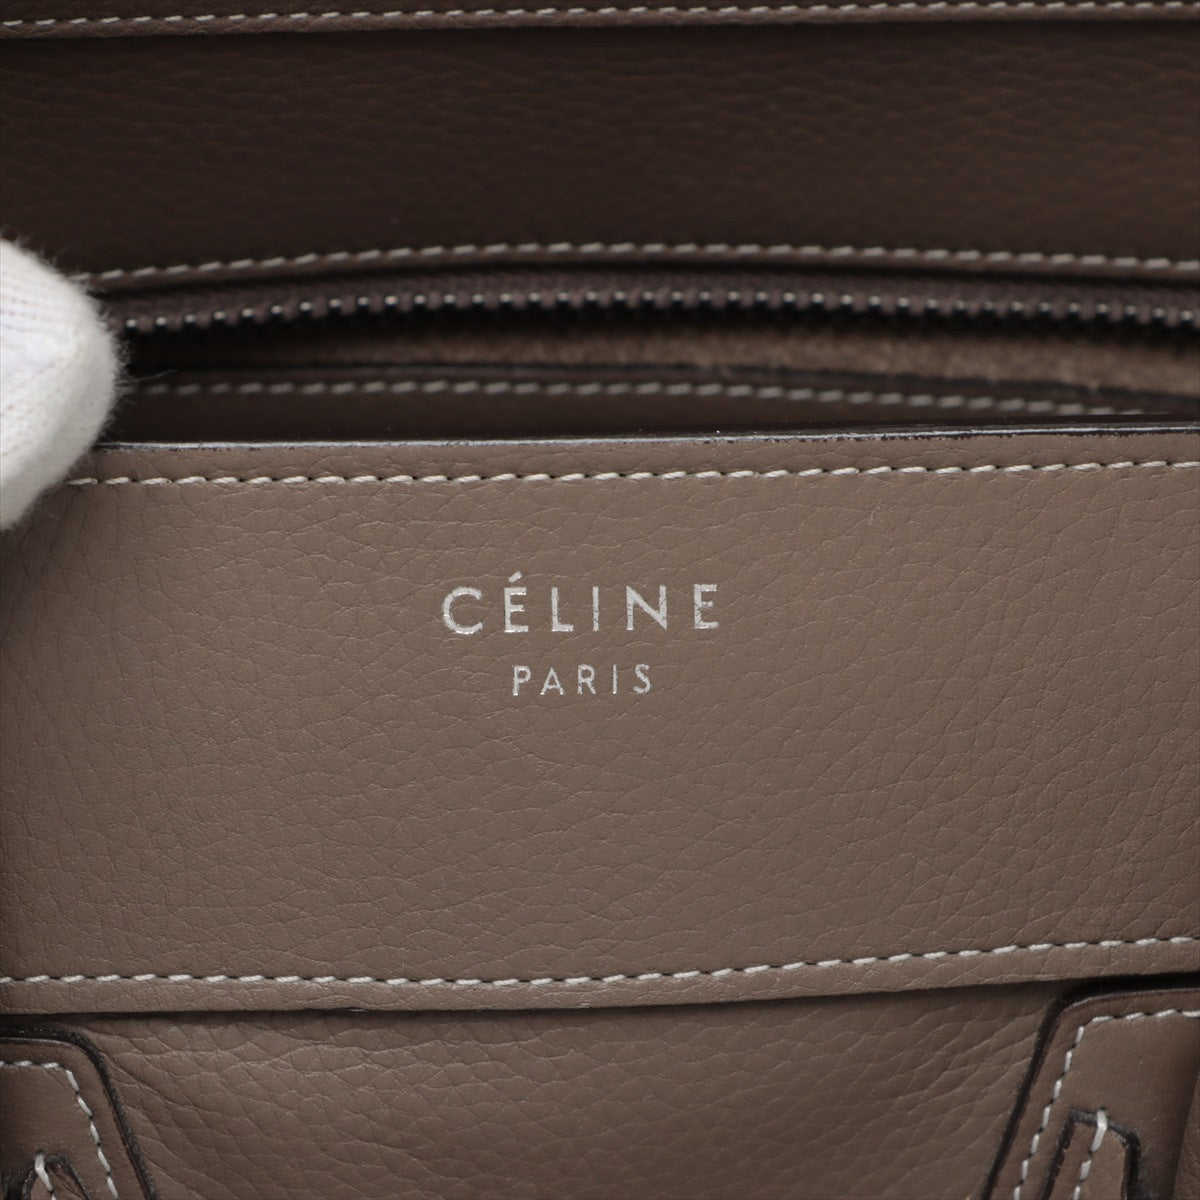 Celine Luggage Phantom Medium Leather Handbag Beige Lagoon